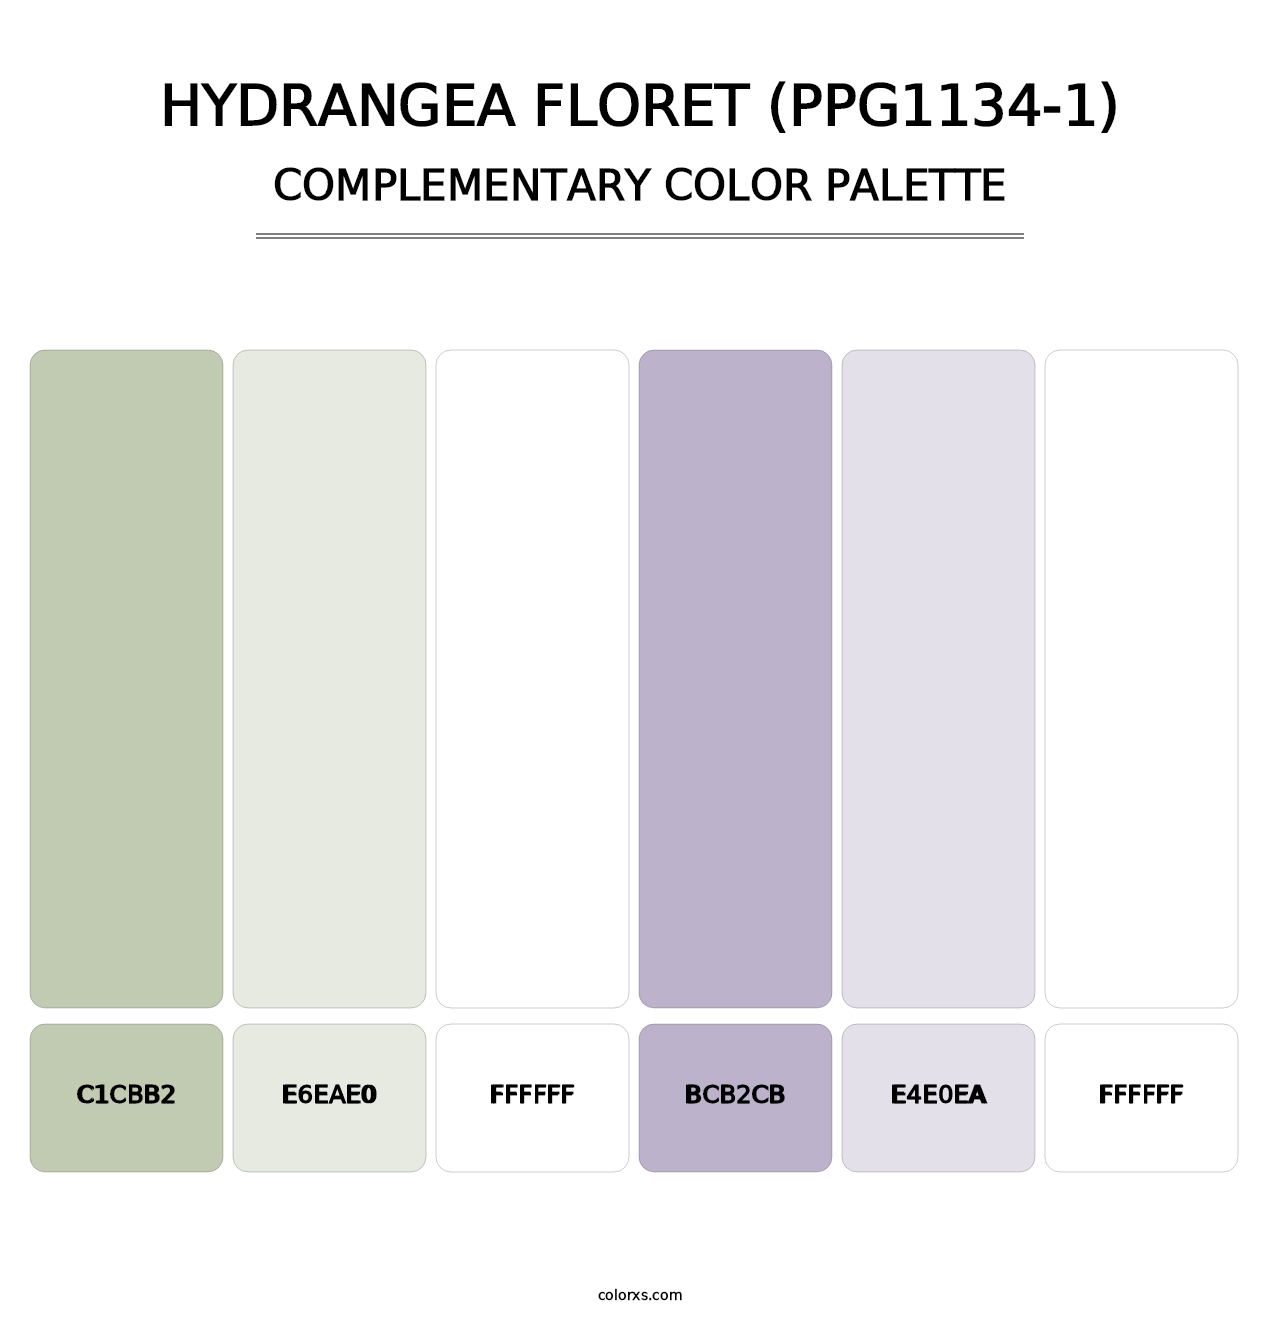 Hydrangea Floret (PPG1134-1) - Complementary Color Palette